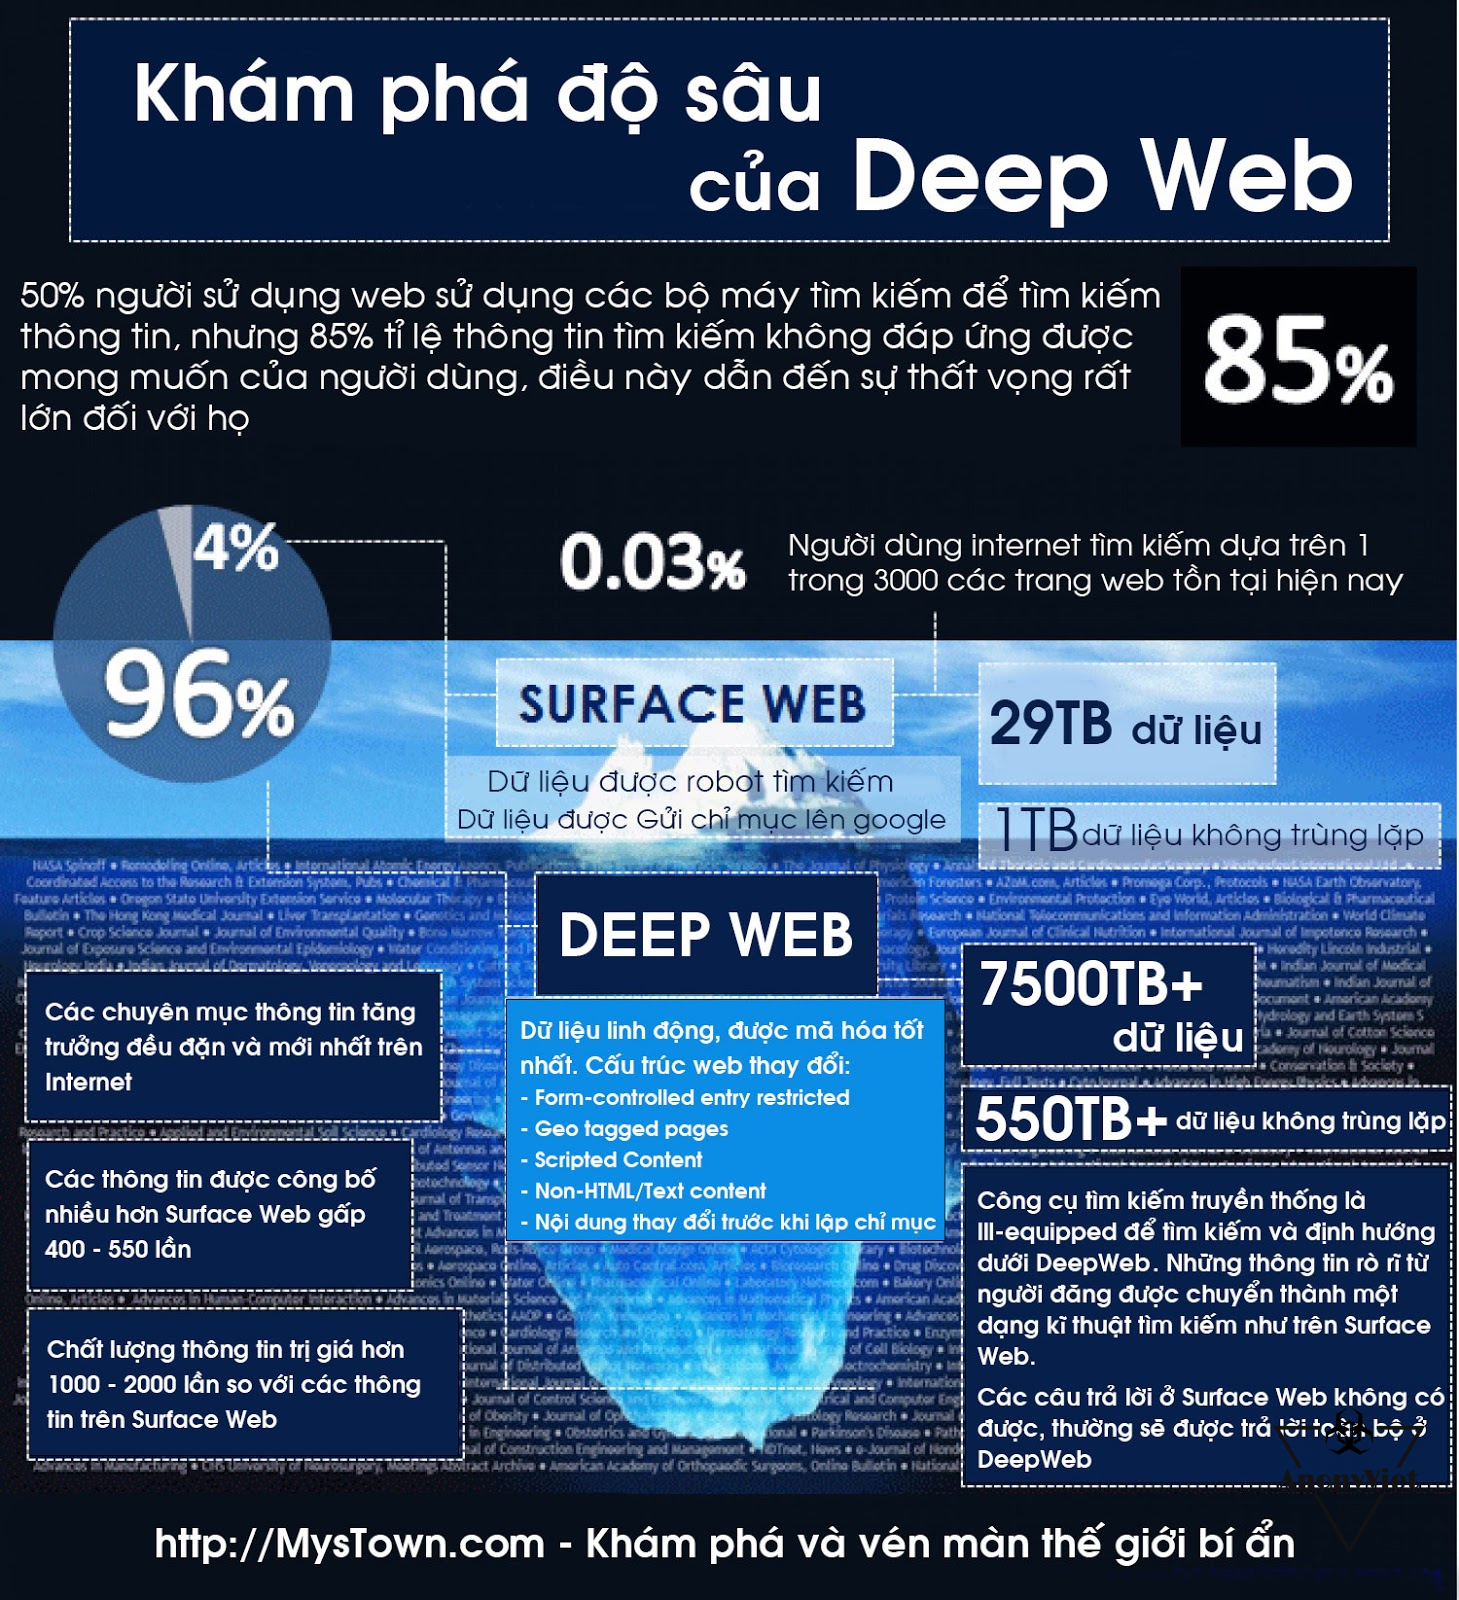 123123 - Deep Web là gì? Cách vào Deep Web chi tiết nhất